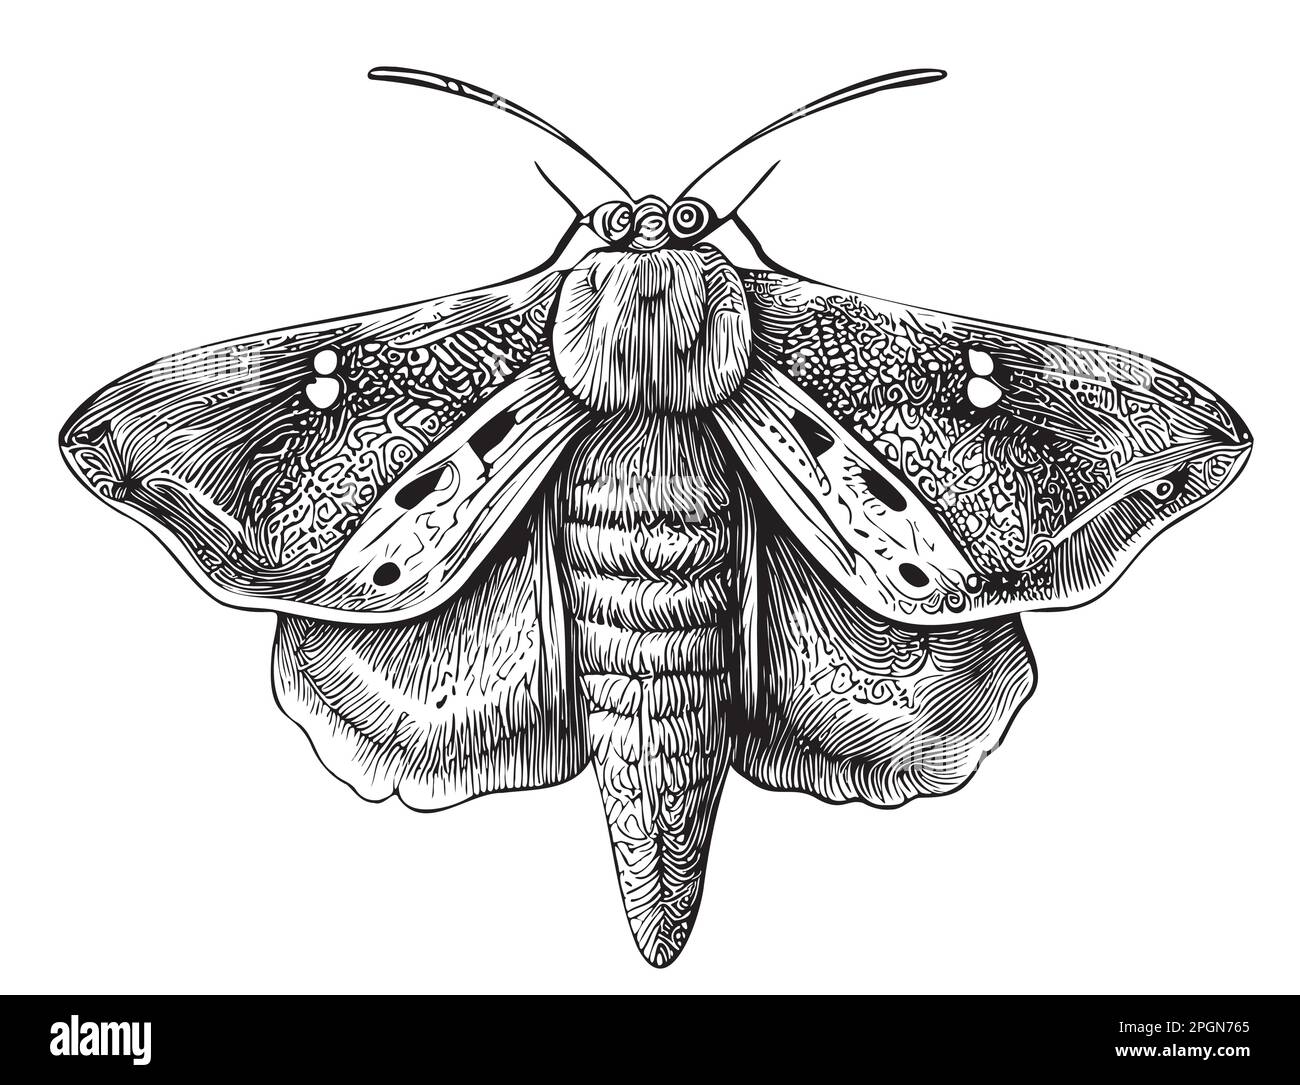 Croquis de papillon dessiné à la main dans une illustration de style Doodle Illustration de Vecteur